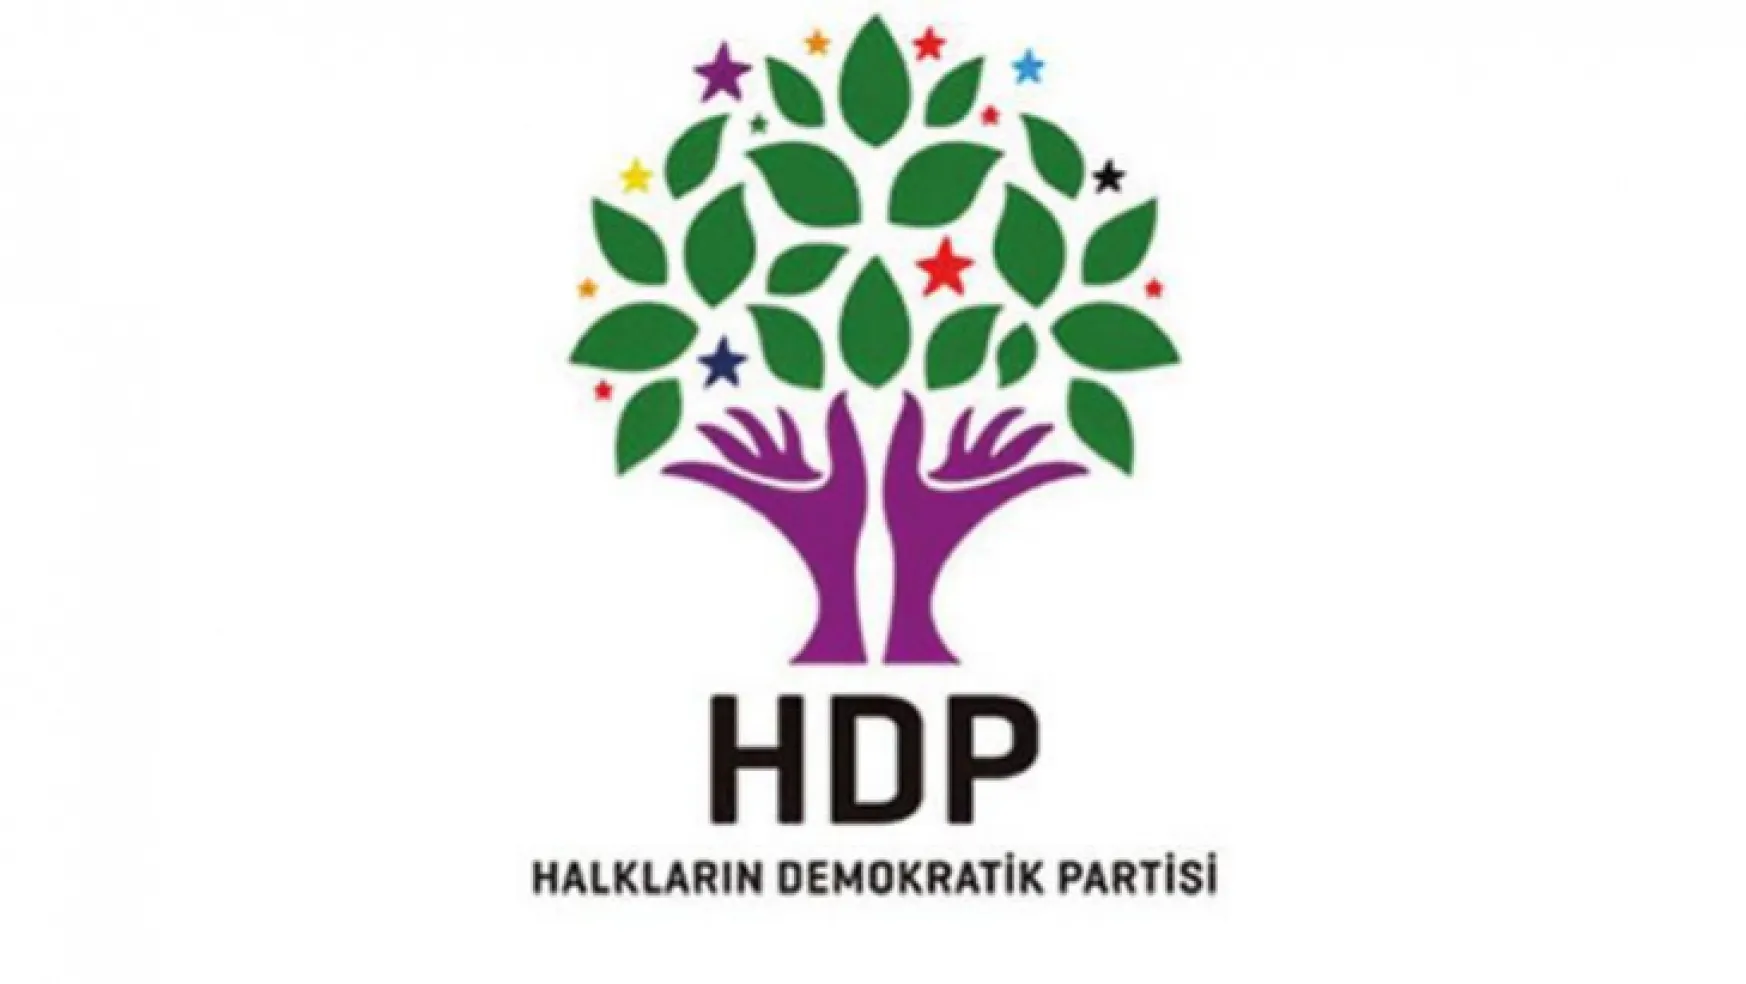 HDP'nin içi boşaltıldı: Meclis'te HDP milletvekili kalmadı!